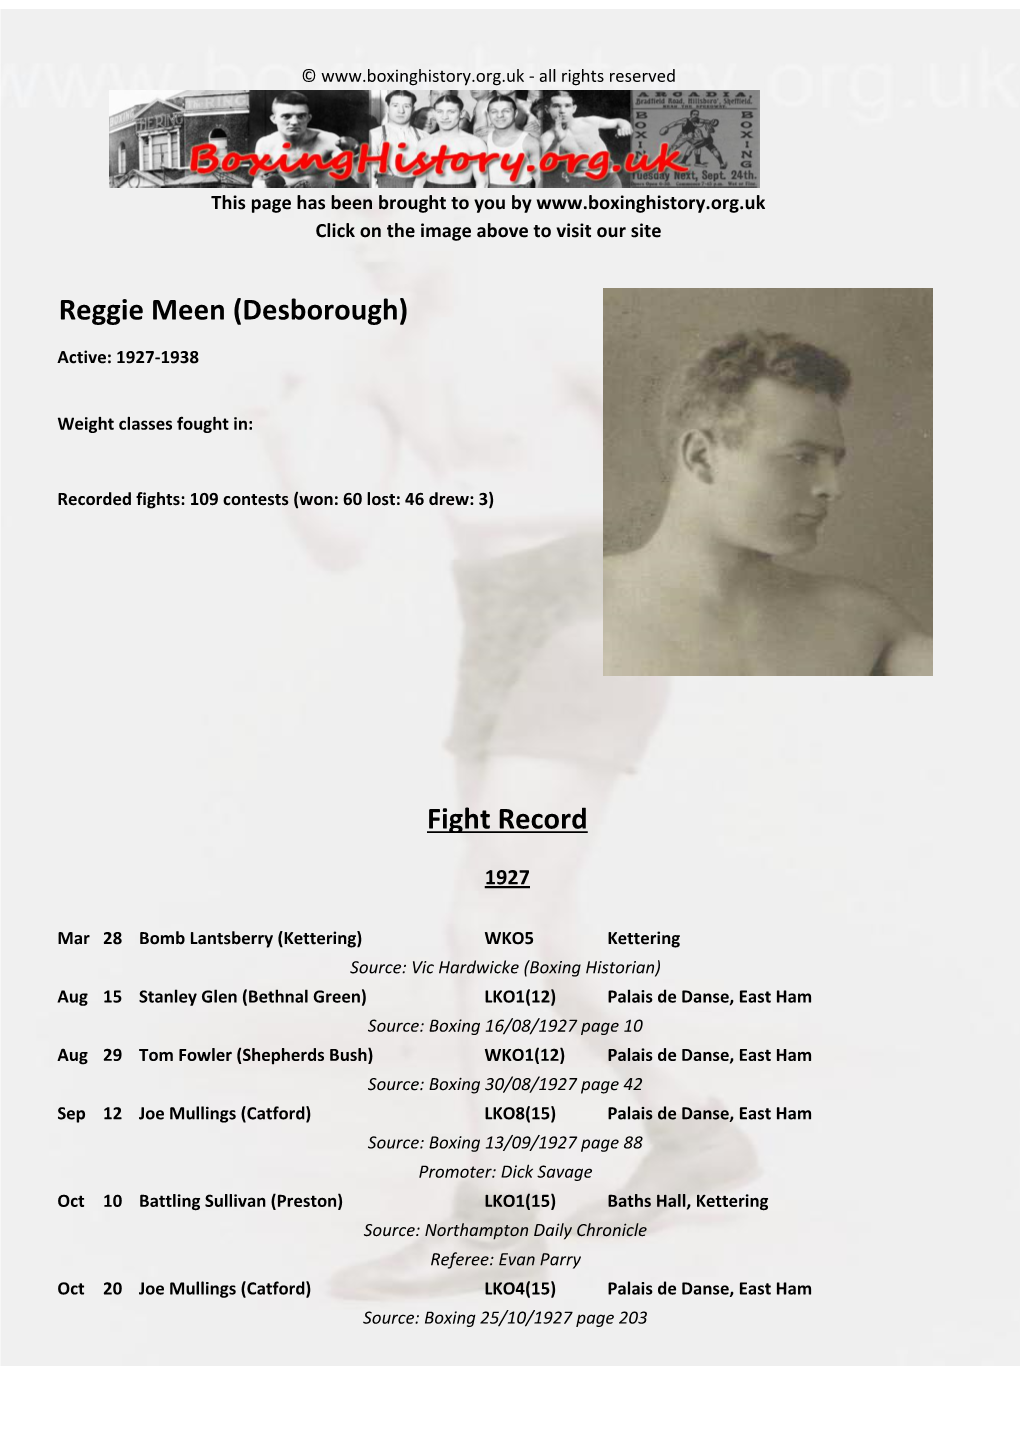 Fight Record Reggie Meen (Desborough)